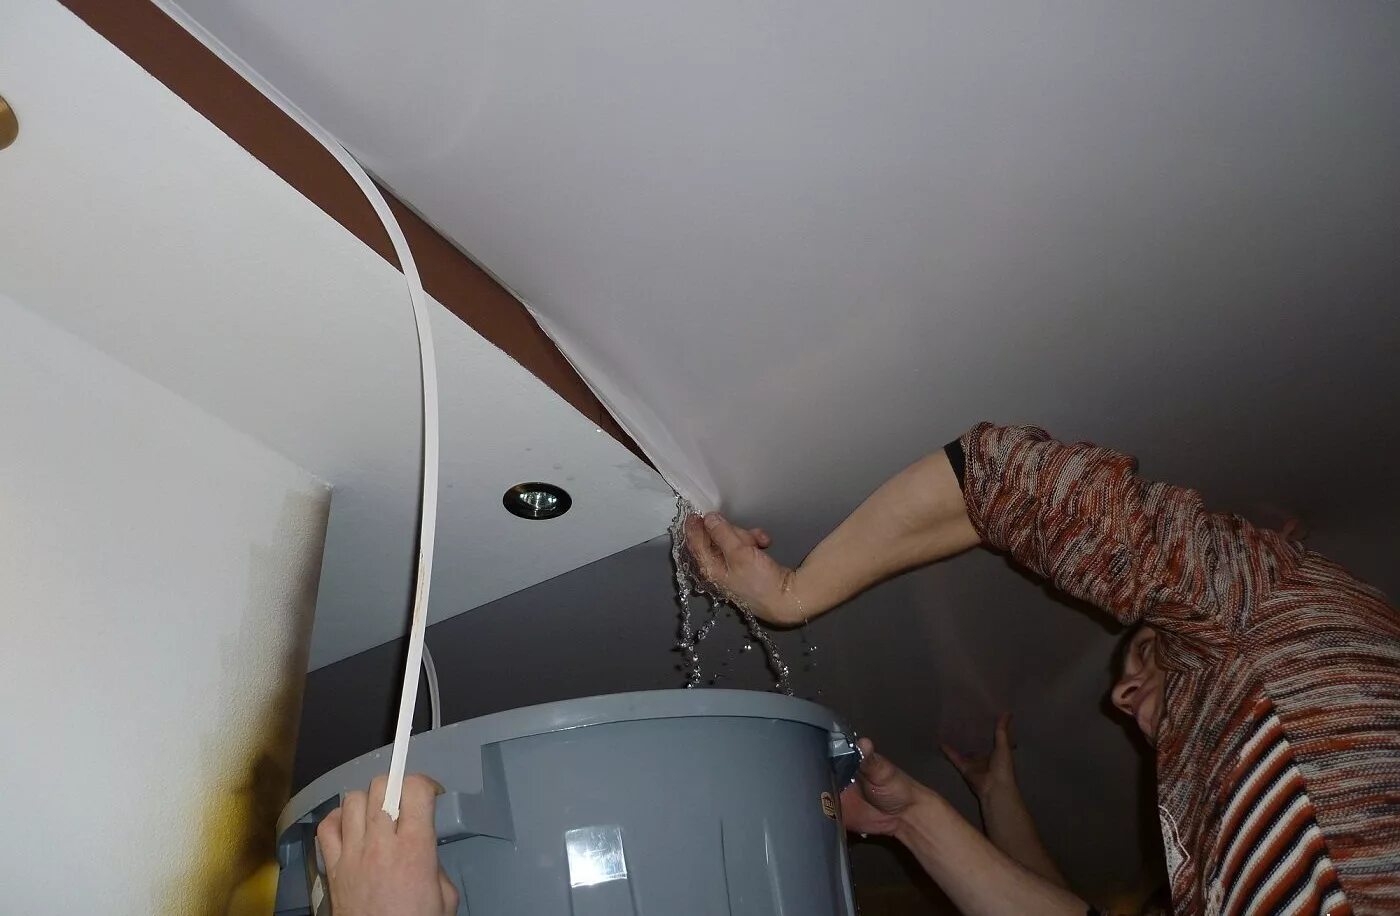 Можно ли в ванной делать натяжные потолки